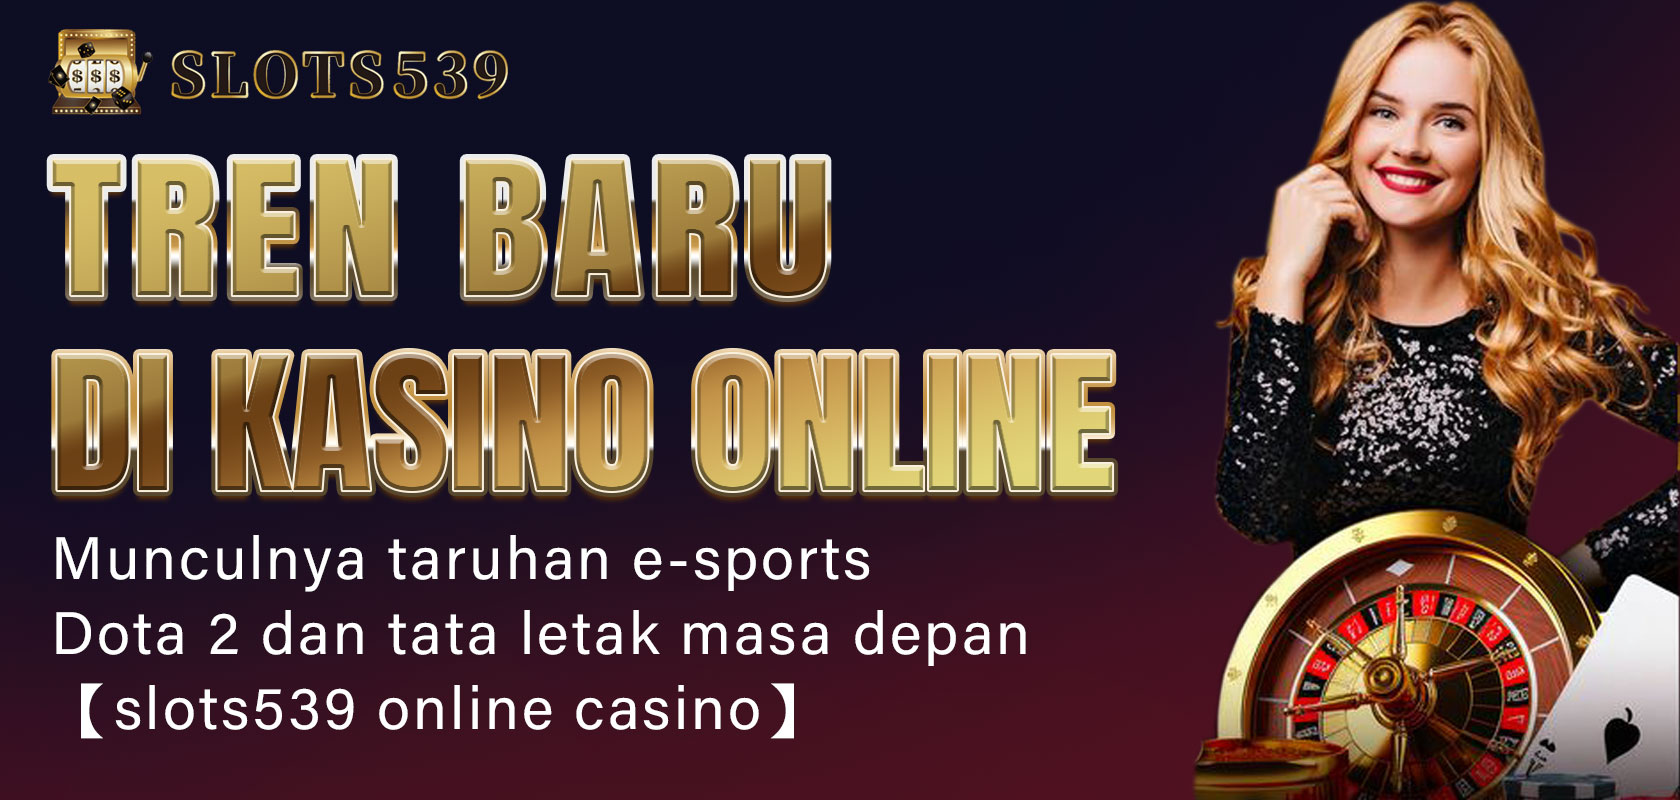 Tren baru di kasino online Munculnya taruhan e-sports Dota 2 dan tata letak masa depan 【slots539 online casino】